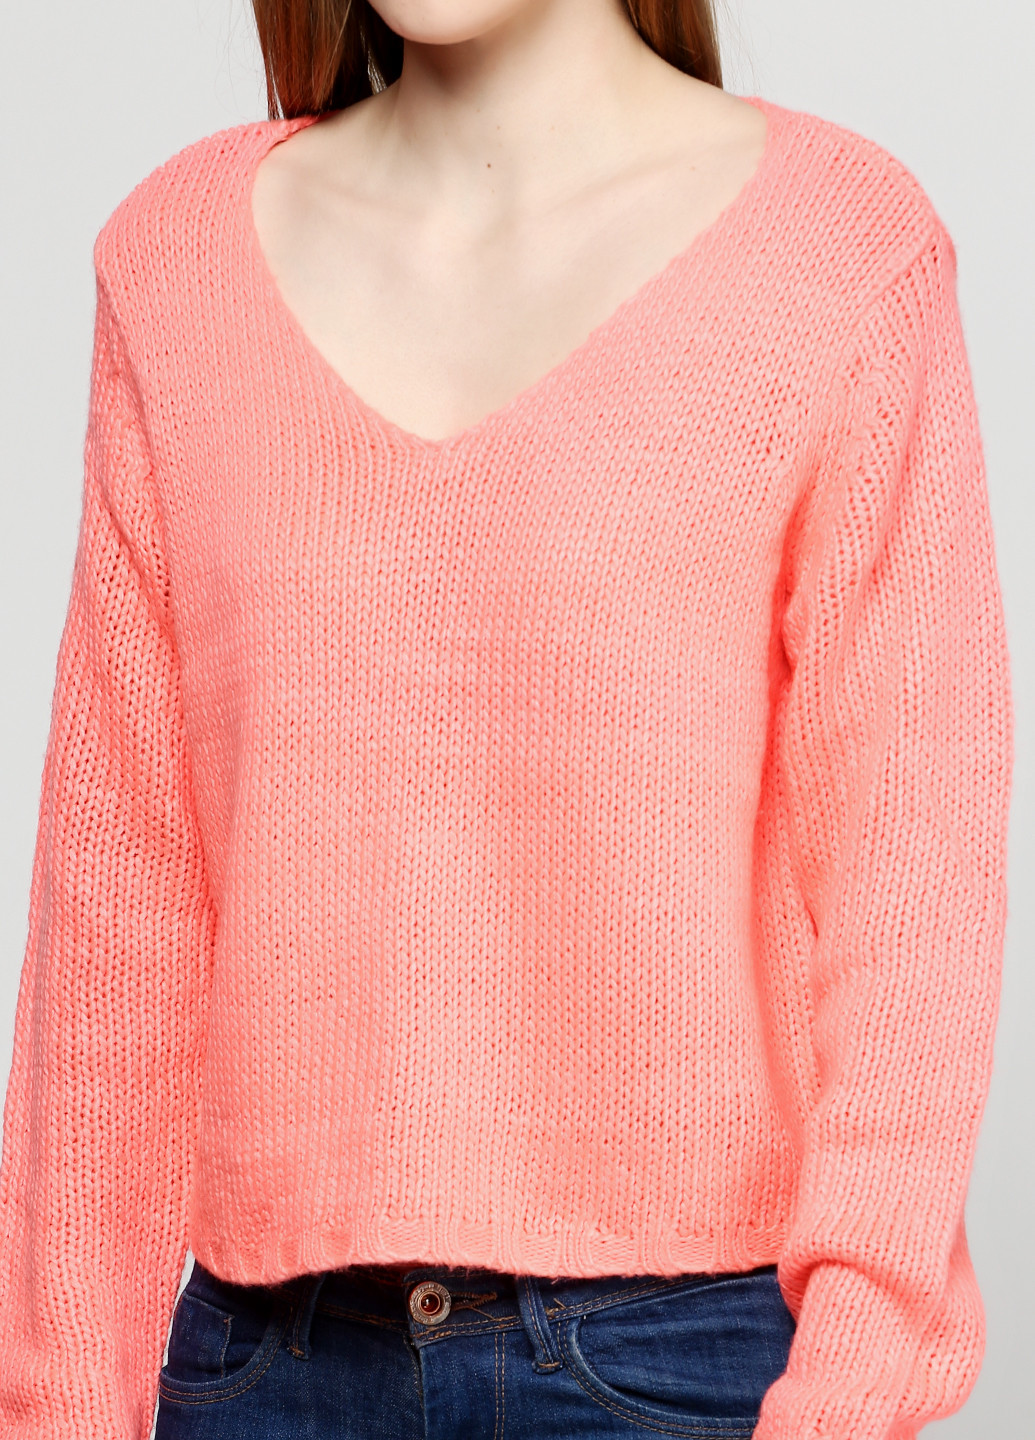 Оранжевый демисезонный пуловер пуловер Long Island